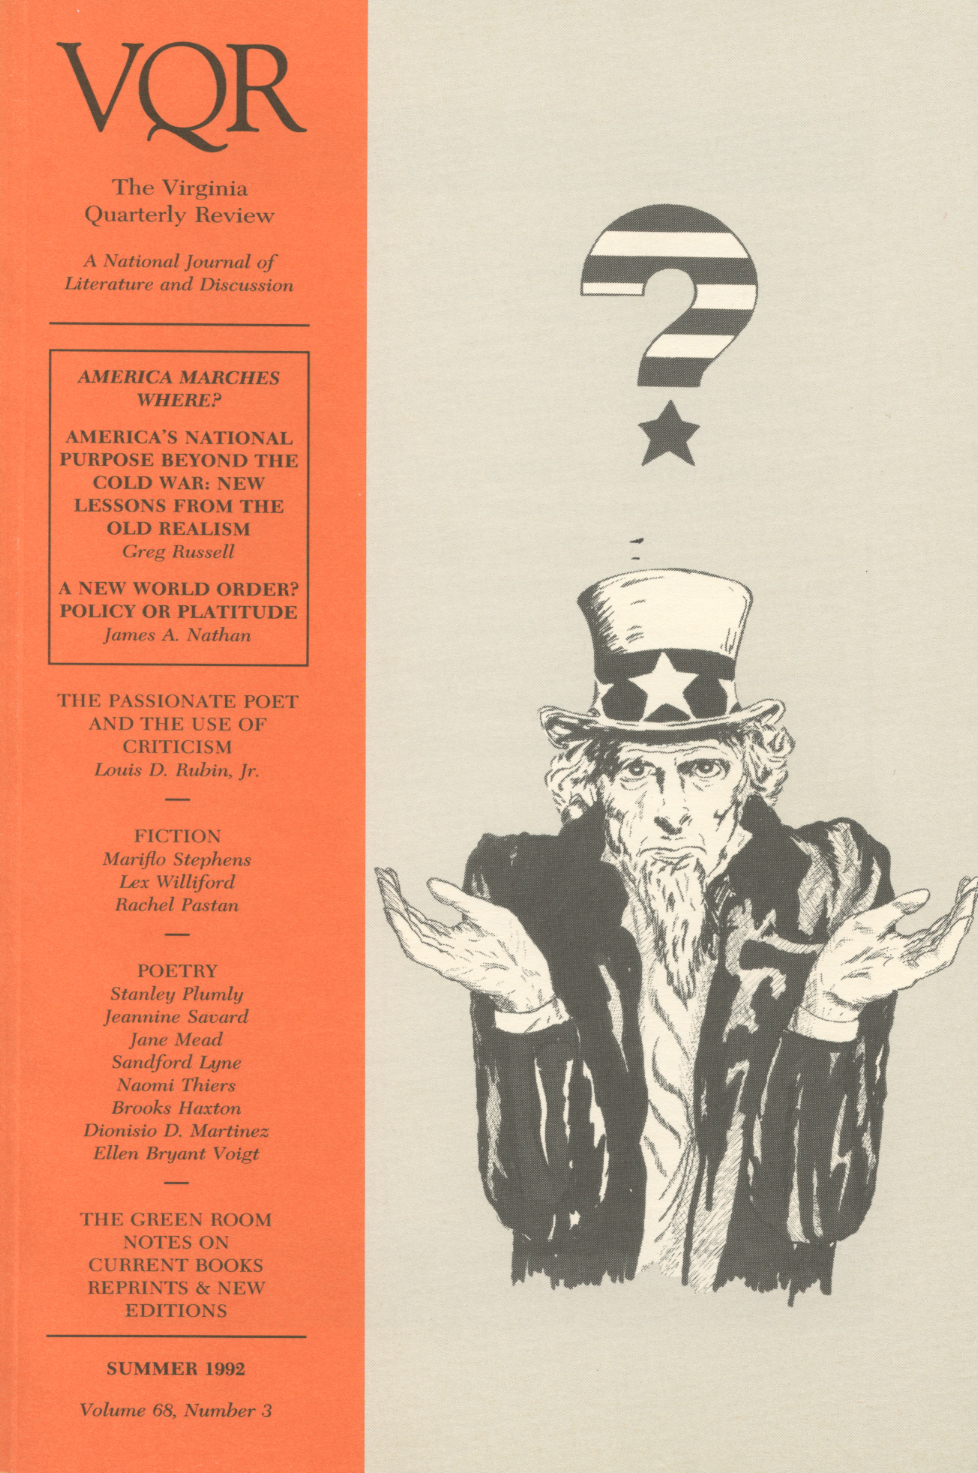 Virginia Quarterly Review, Summer 1992 cover